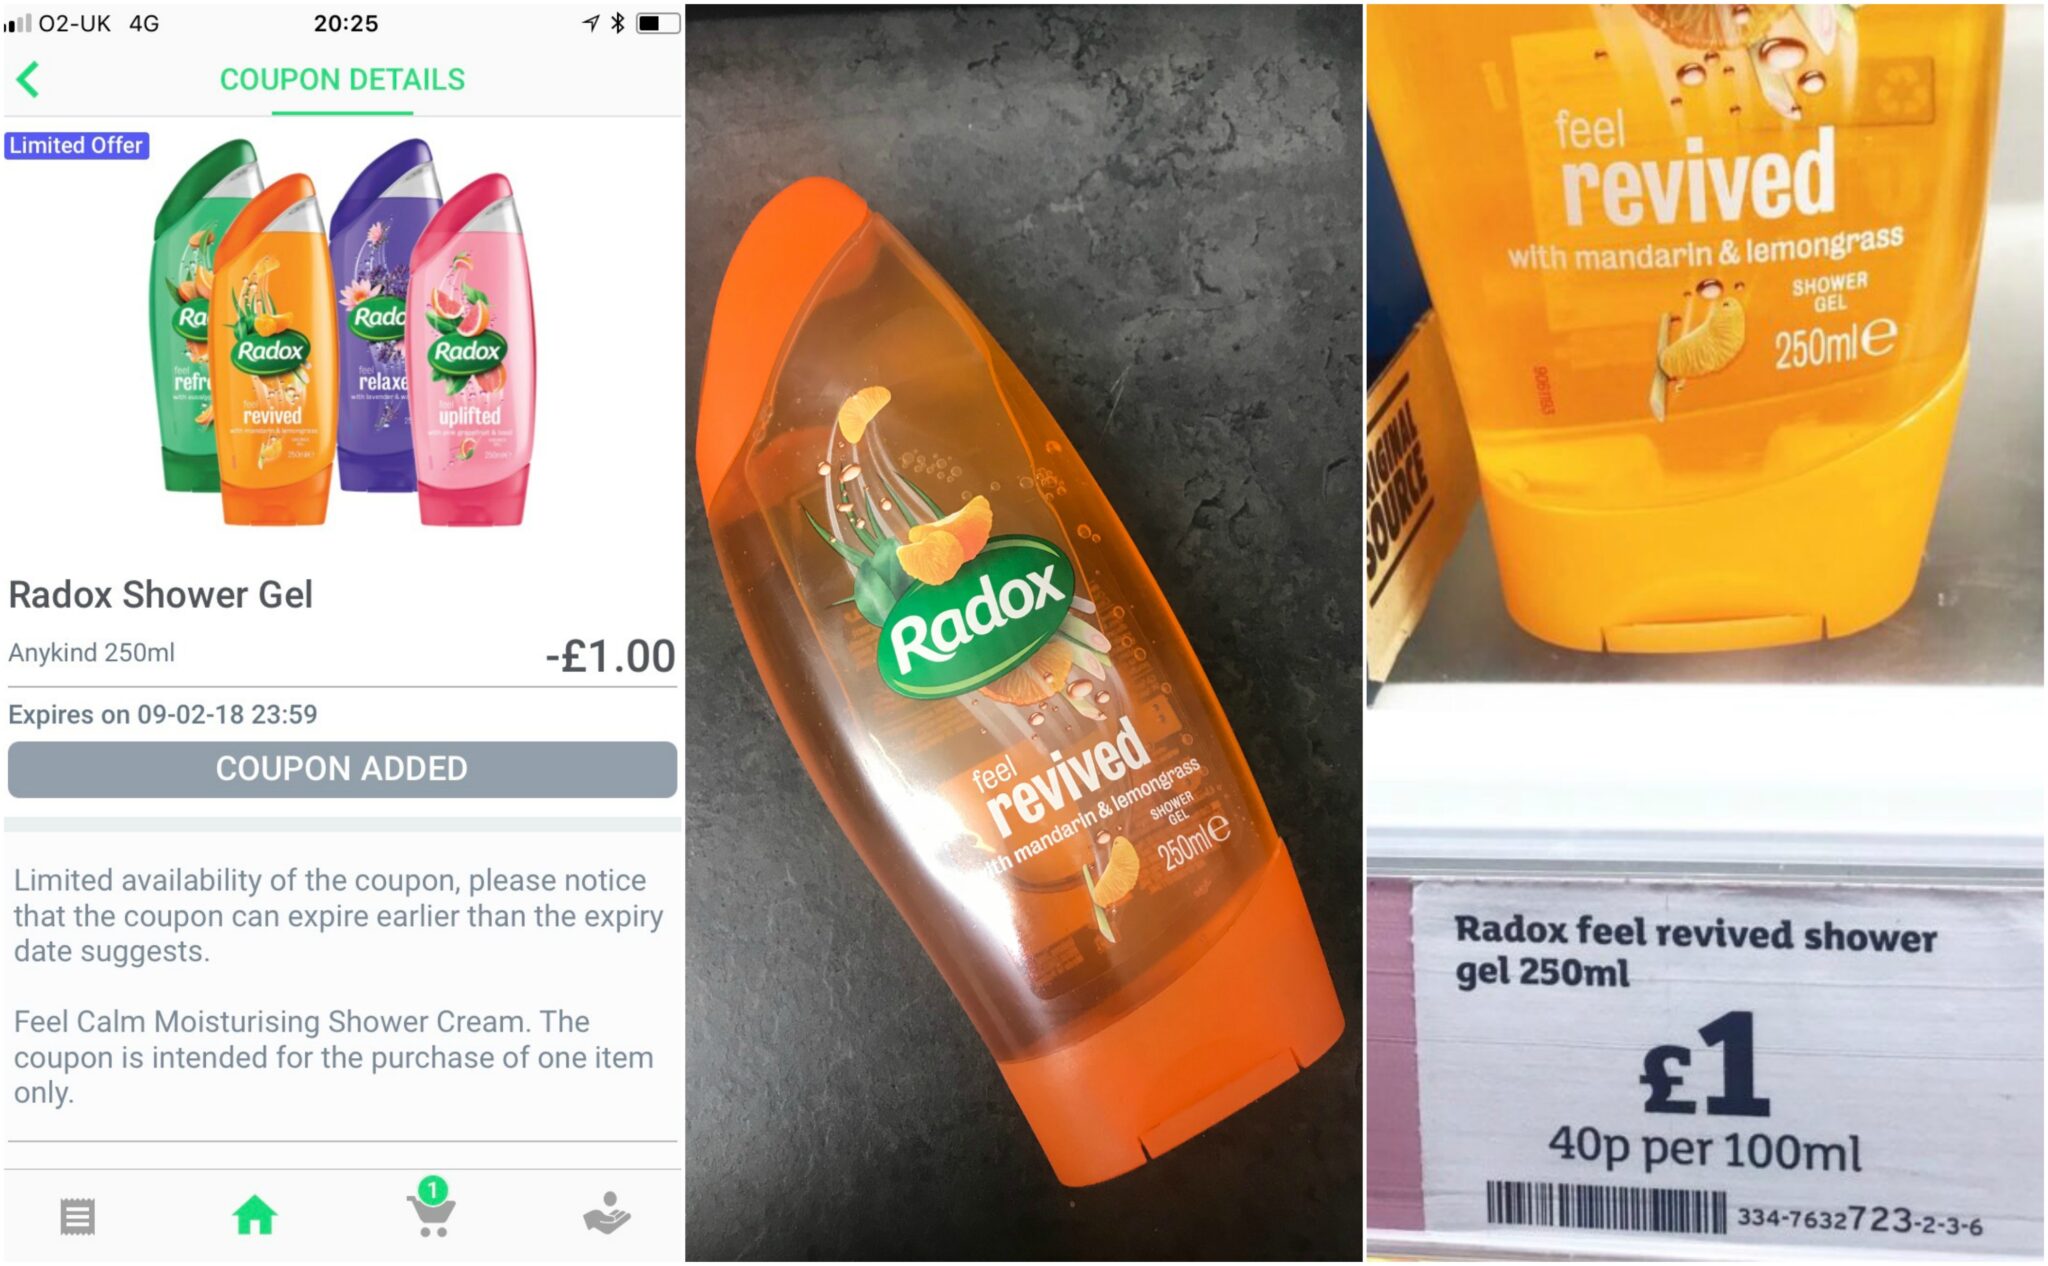 Free shower gel supermarket cashback app